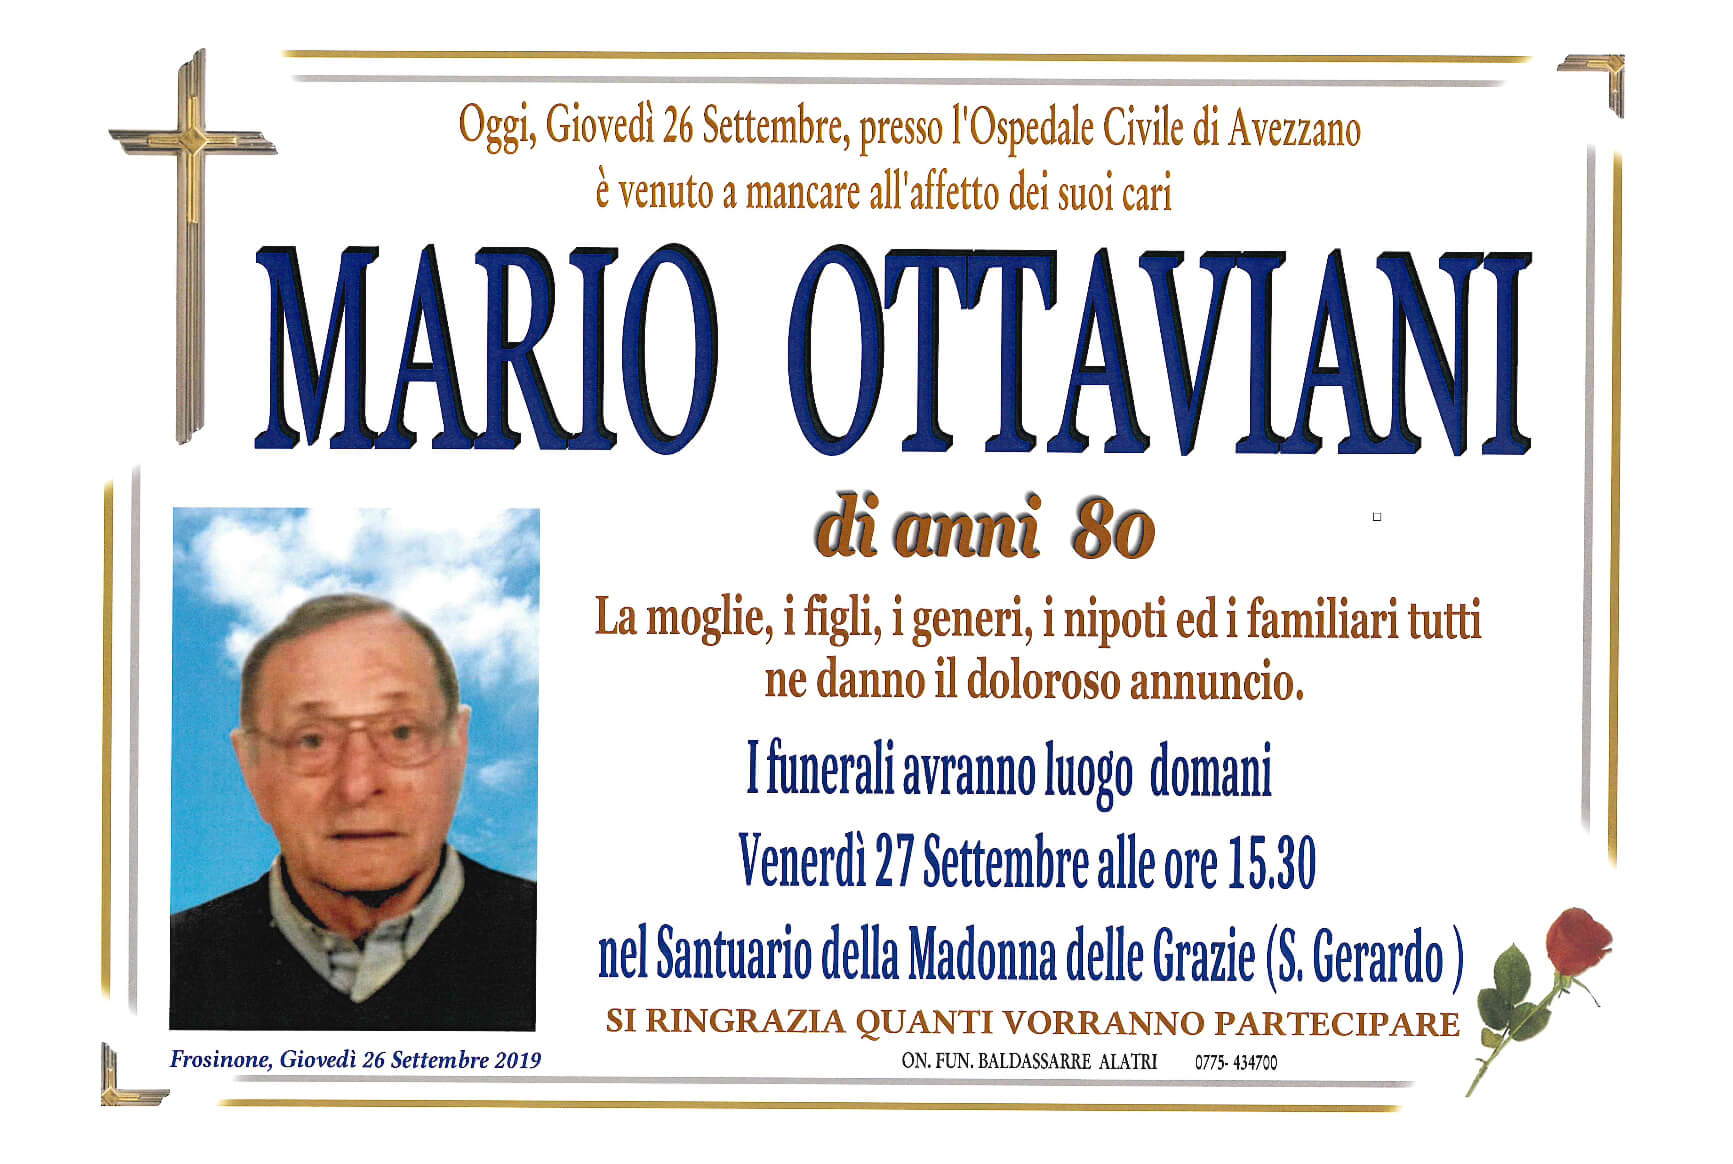 Mario Ottaviani